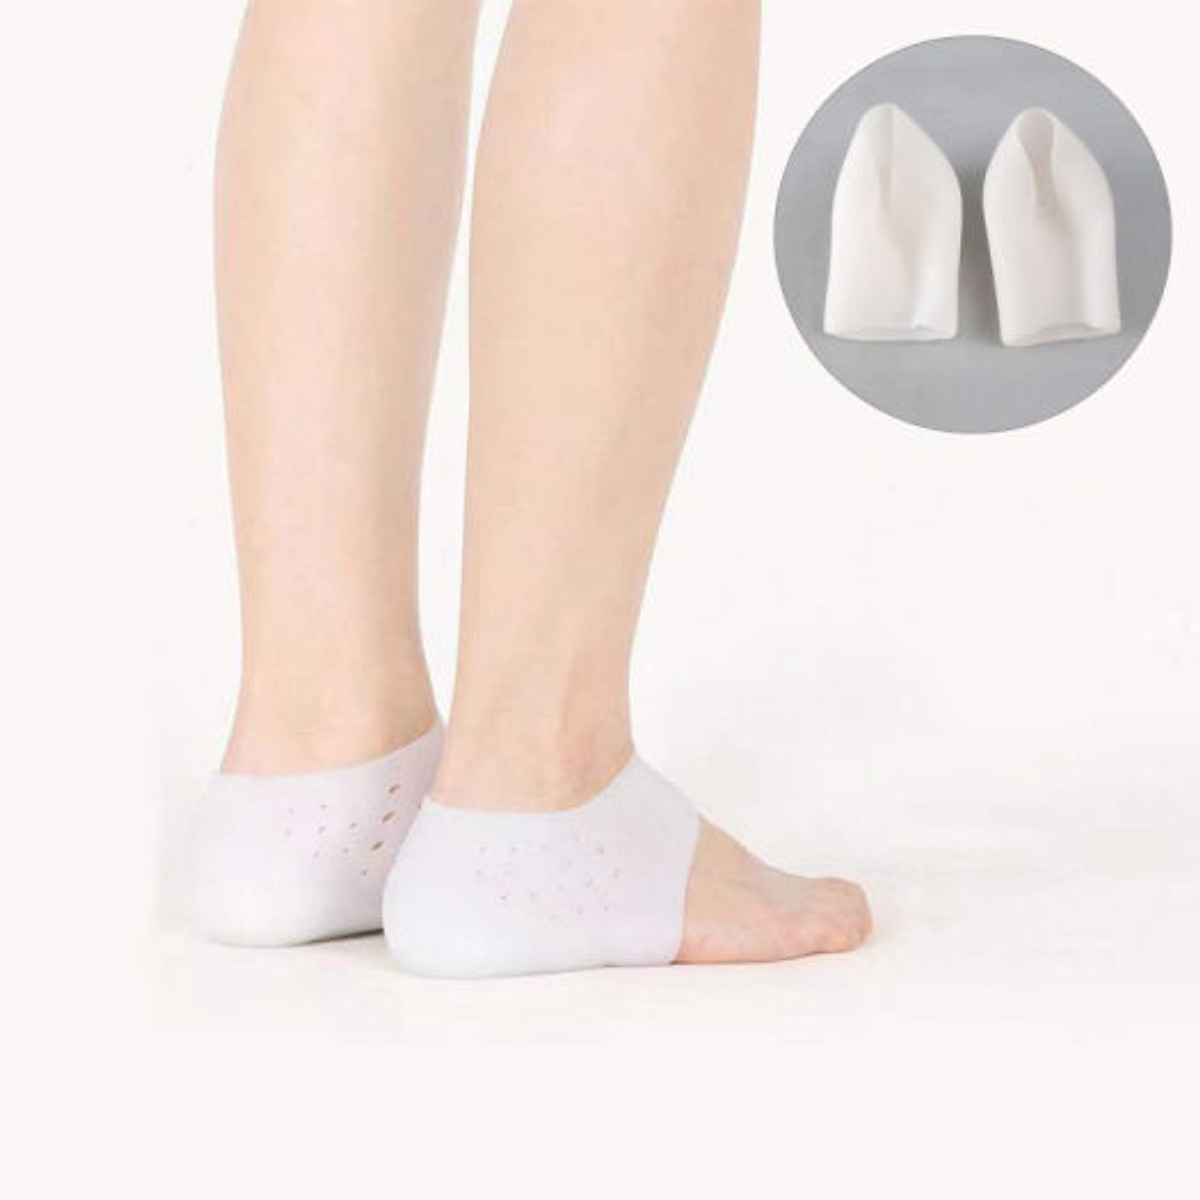 Đôi tất độn gót chân tăng chiều cao tàng hình cho nam và nữ chất liệu silicon co giãn đa chiều - Hai chiếc lót gót chân tăng chiều cao lên 3cm